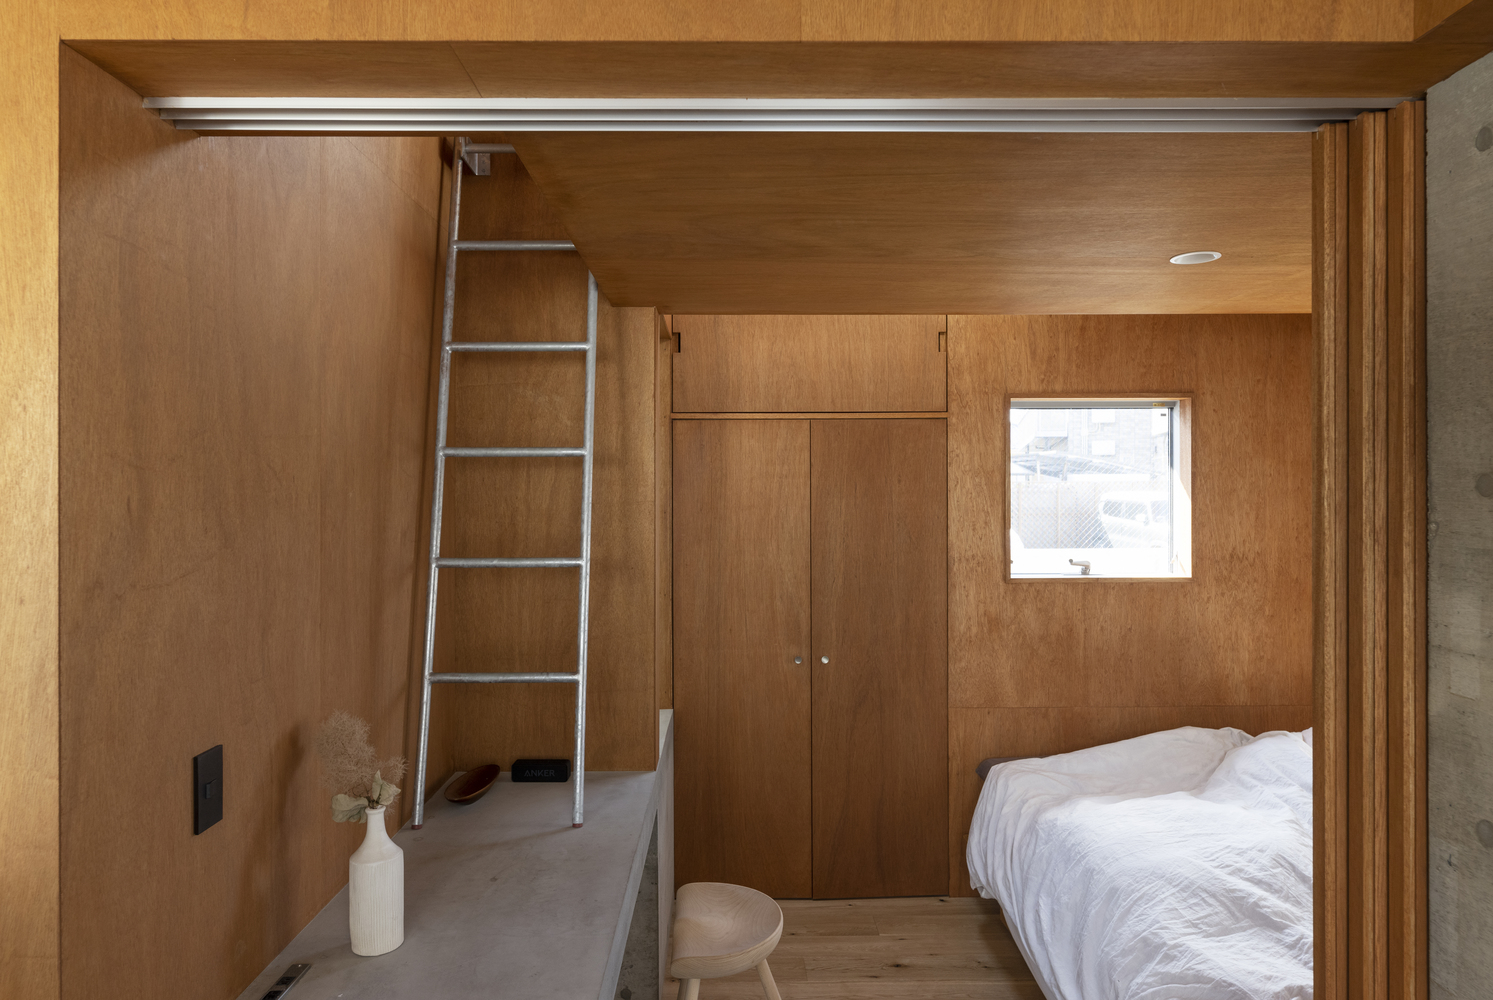 Toàn bộ tường và trần phòng ngủ được ốp gỗ tự nhiên tông màu ấm áp, thân thiện.